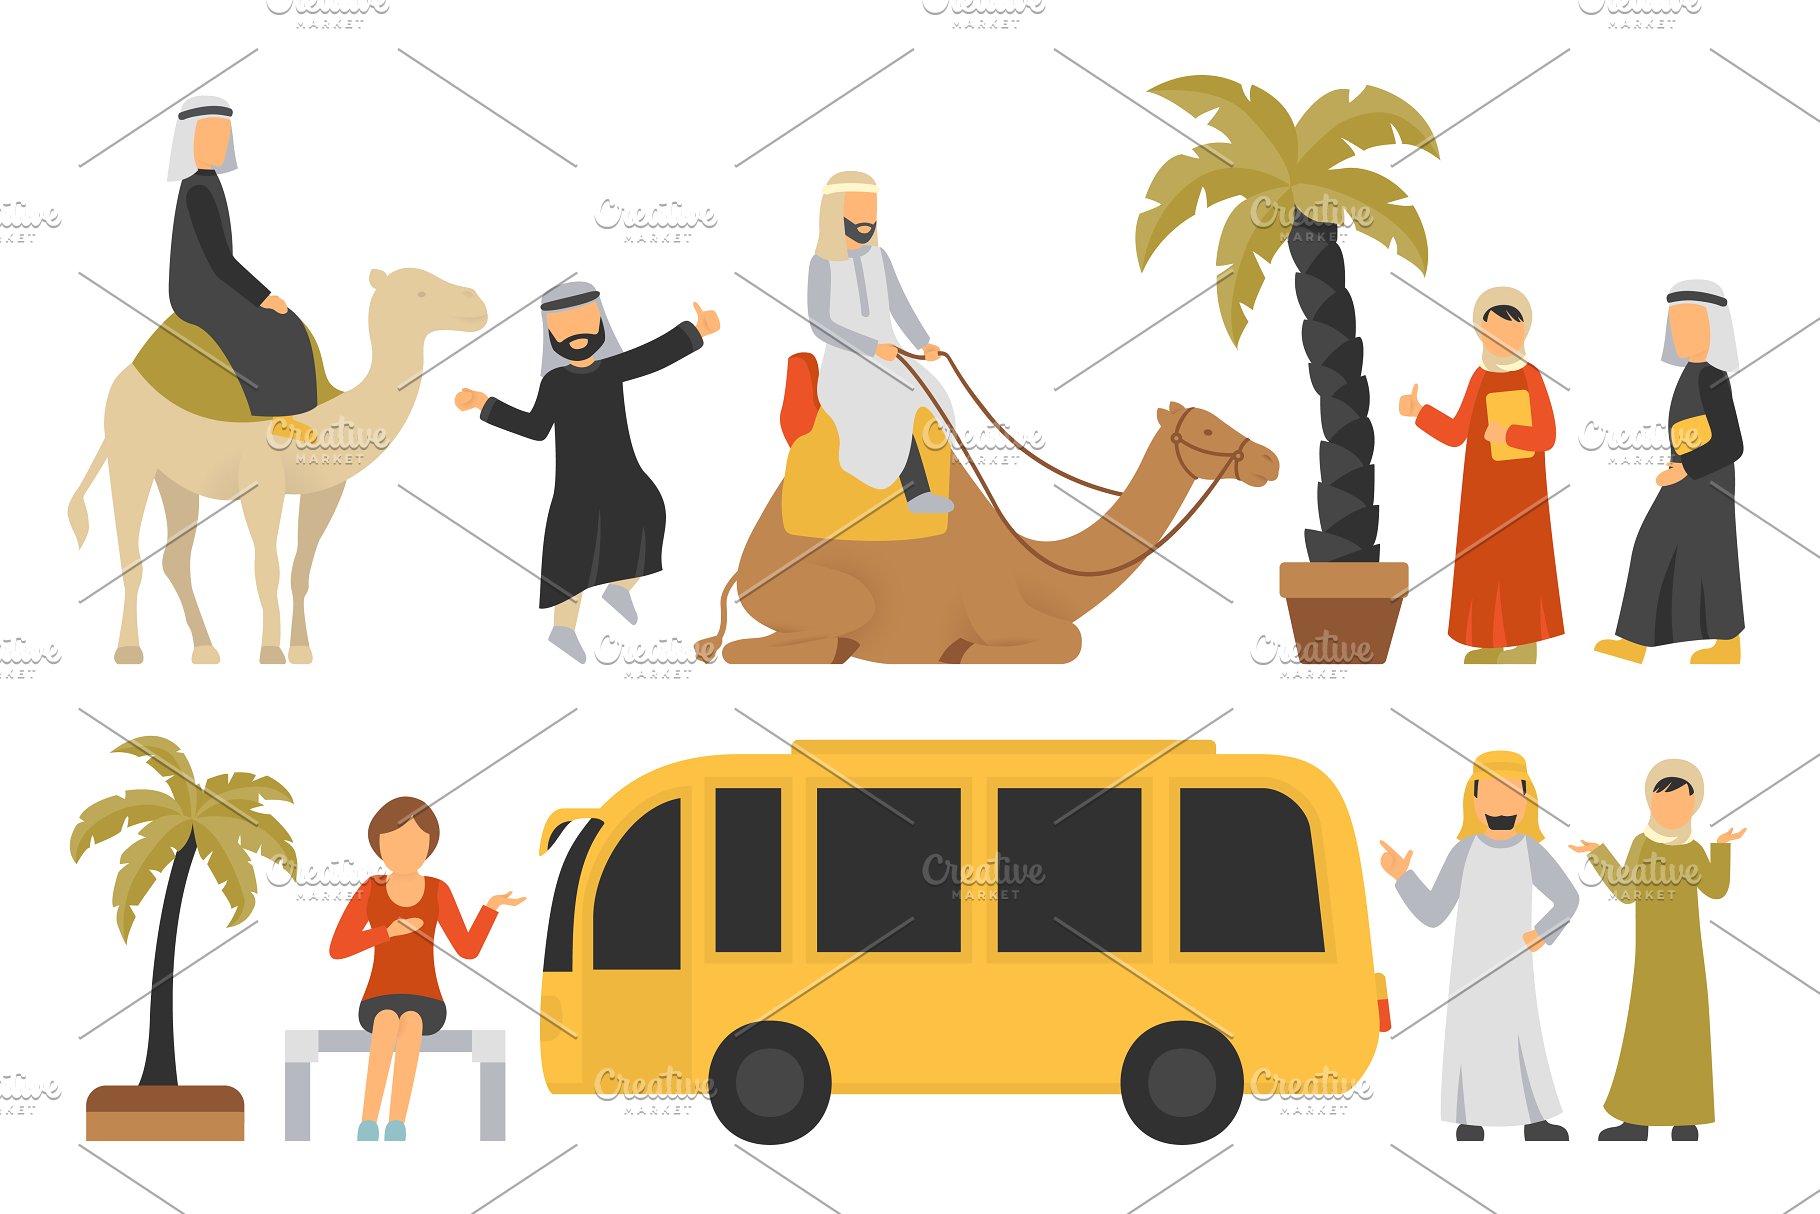 迪拜人物风情扁平化设计插画 Dubai – flat people set插图(1)